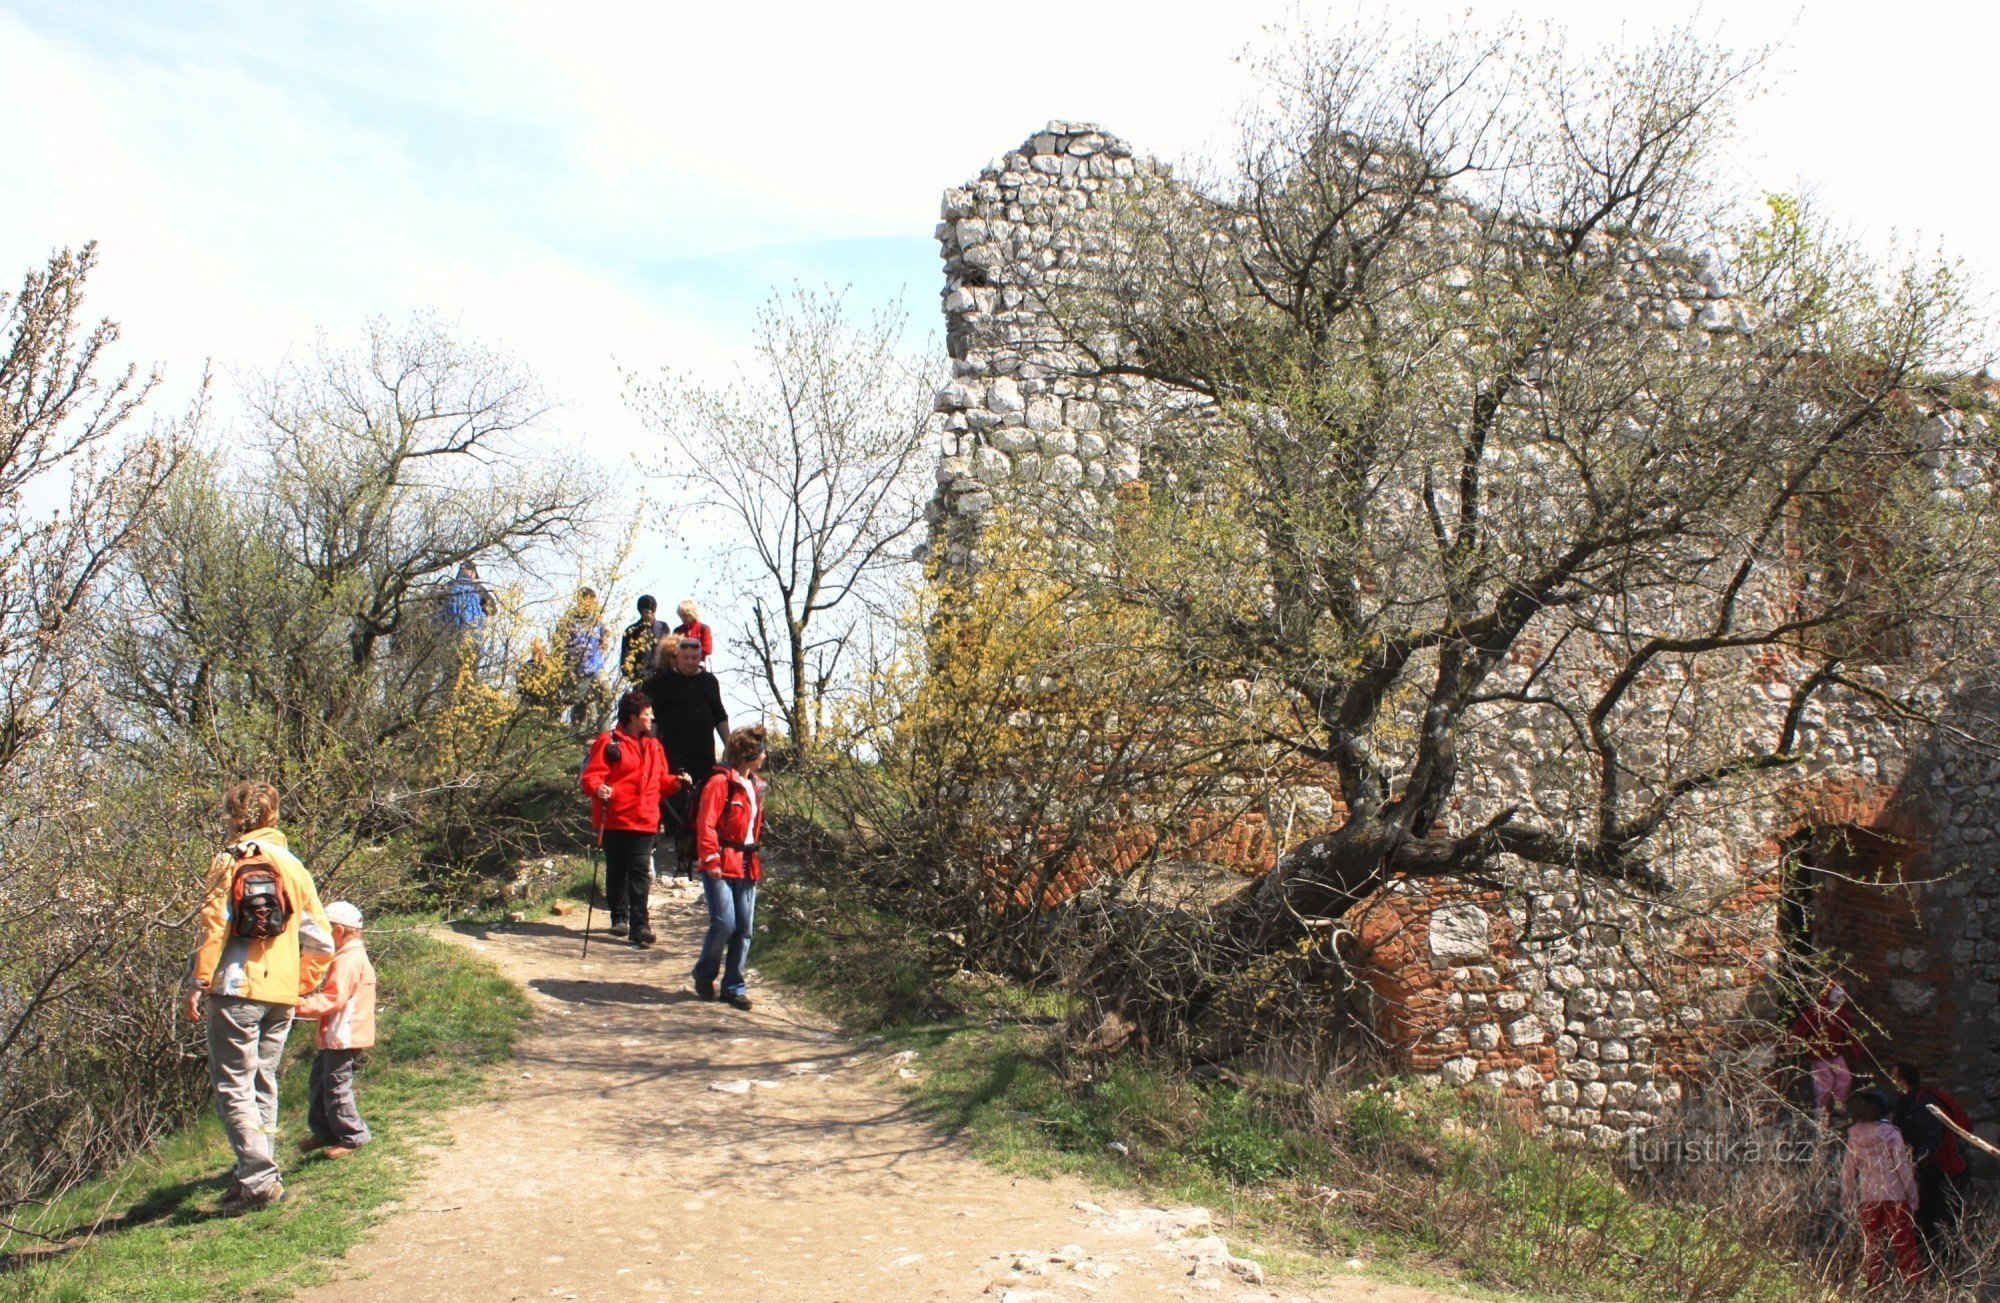 La Castelul Fecioarei